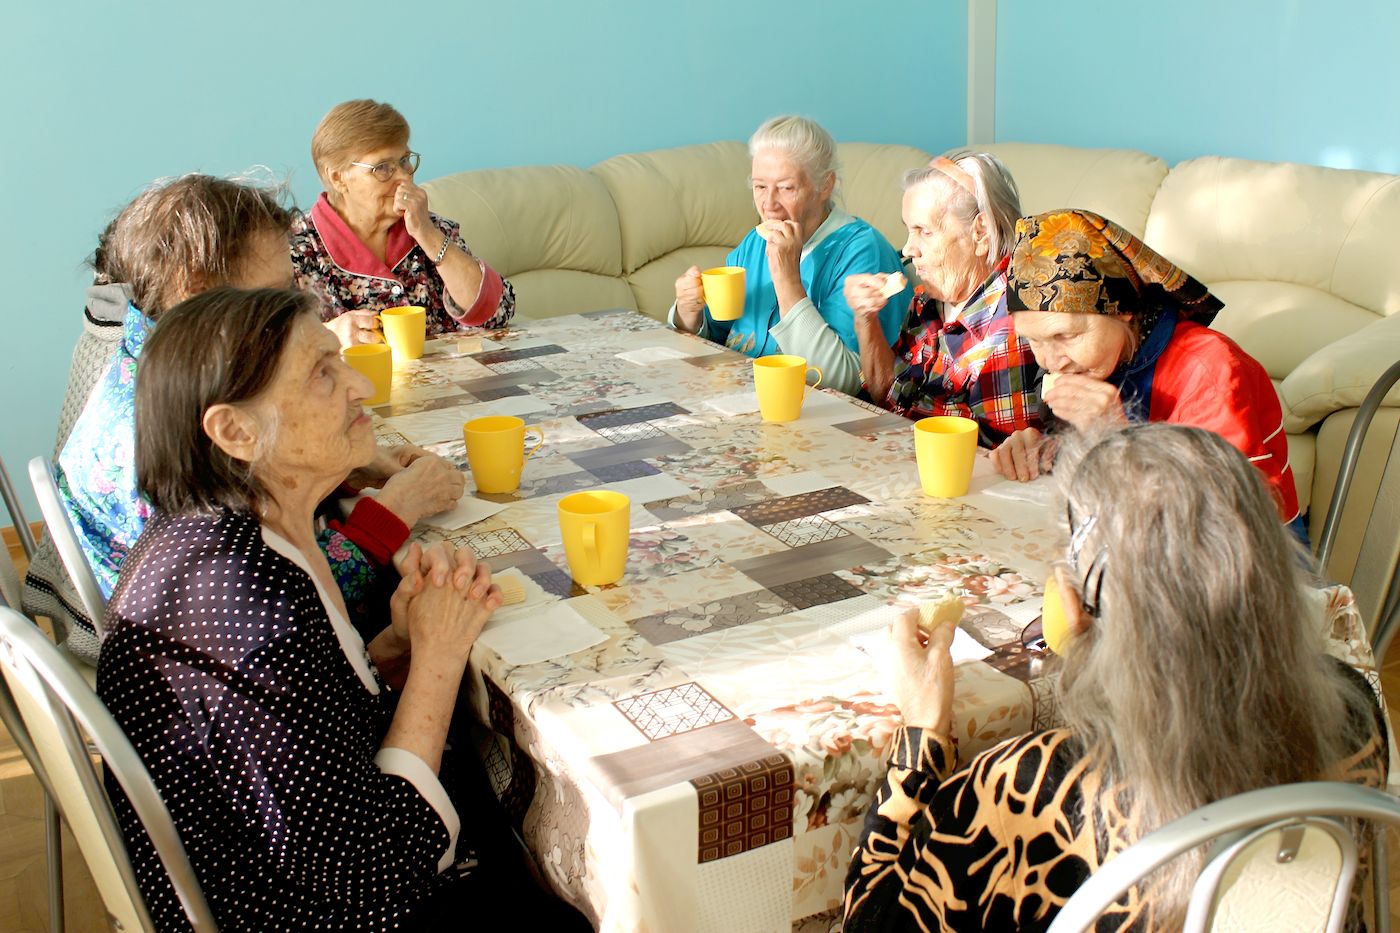 Конкурсы игра для пожилых. Аврорины зори пансионат Коркино для престарелых. Пансионат для пожилых людей. Пансионат для пожилых людей и инвалидов. Развлечения для пенсионеров.